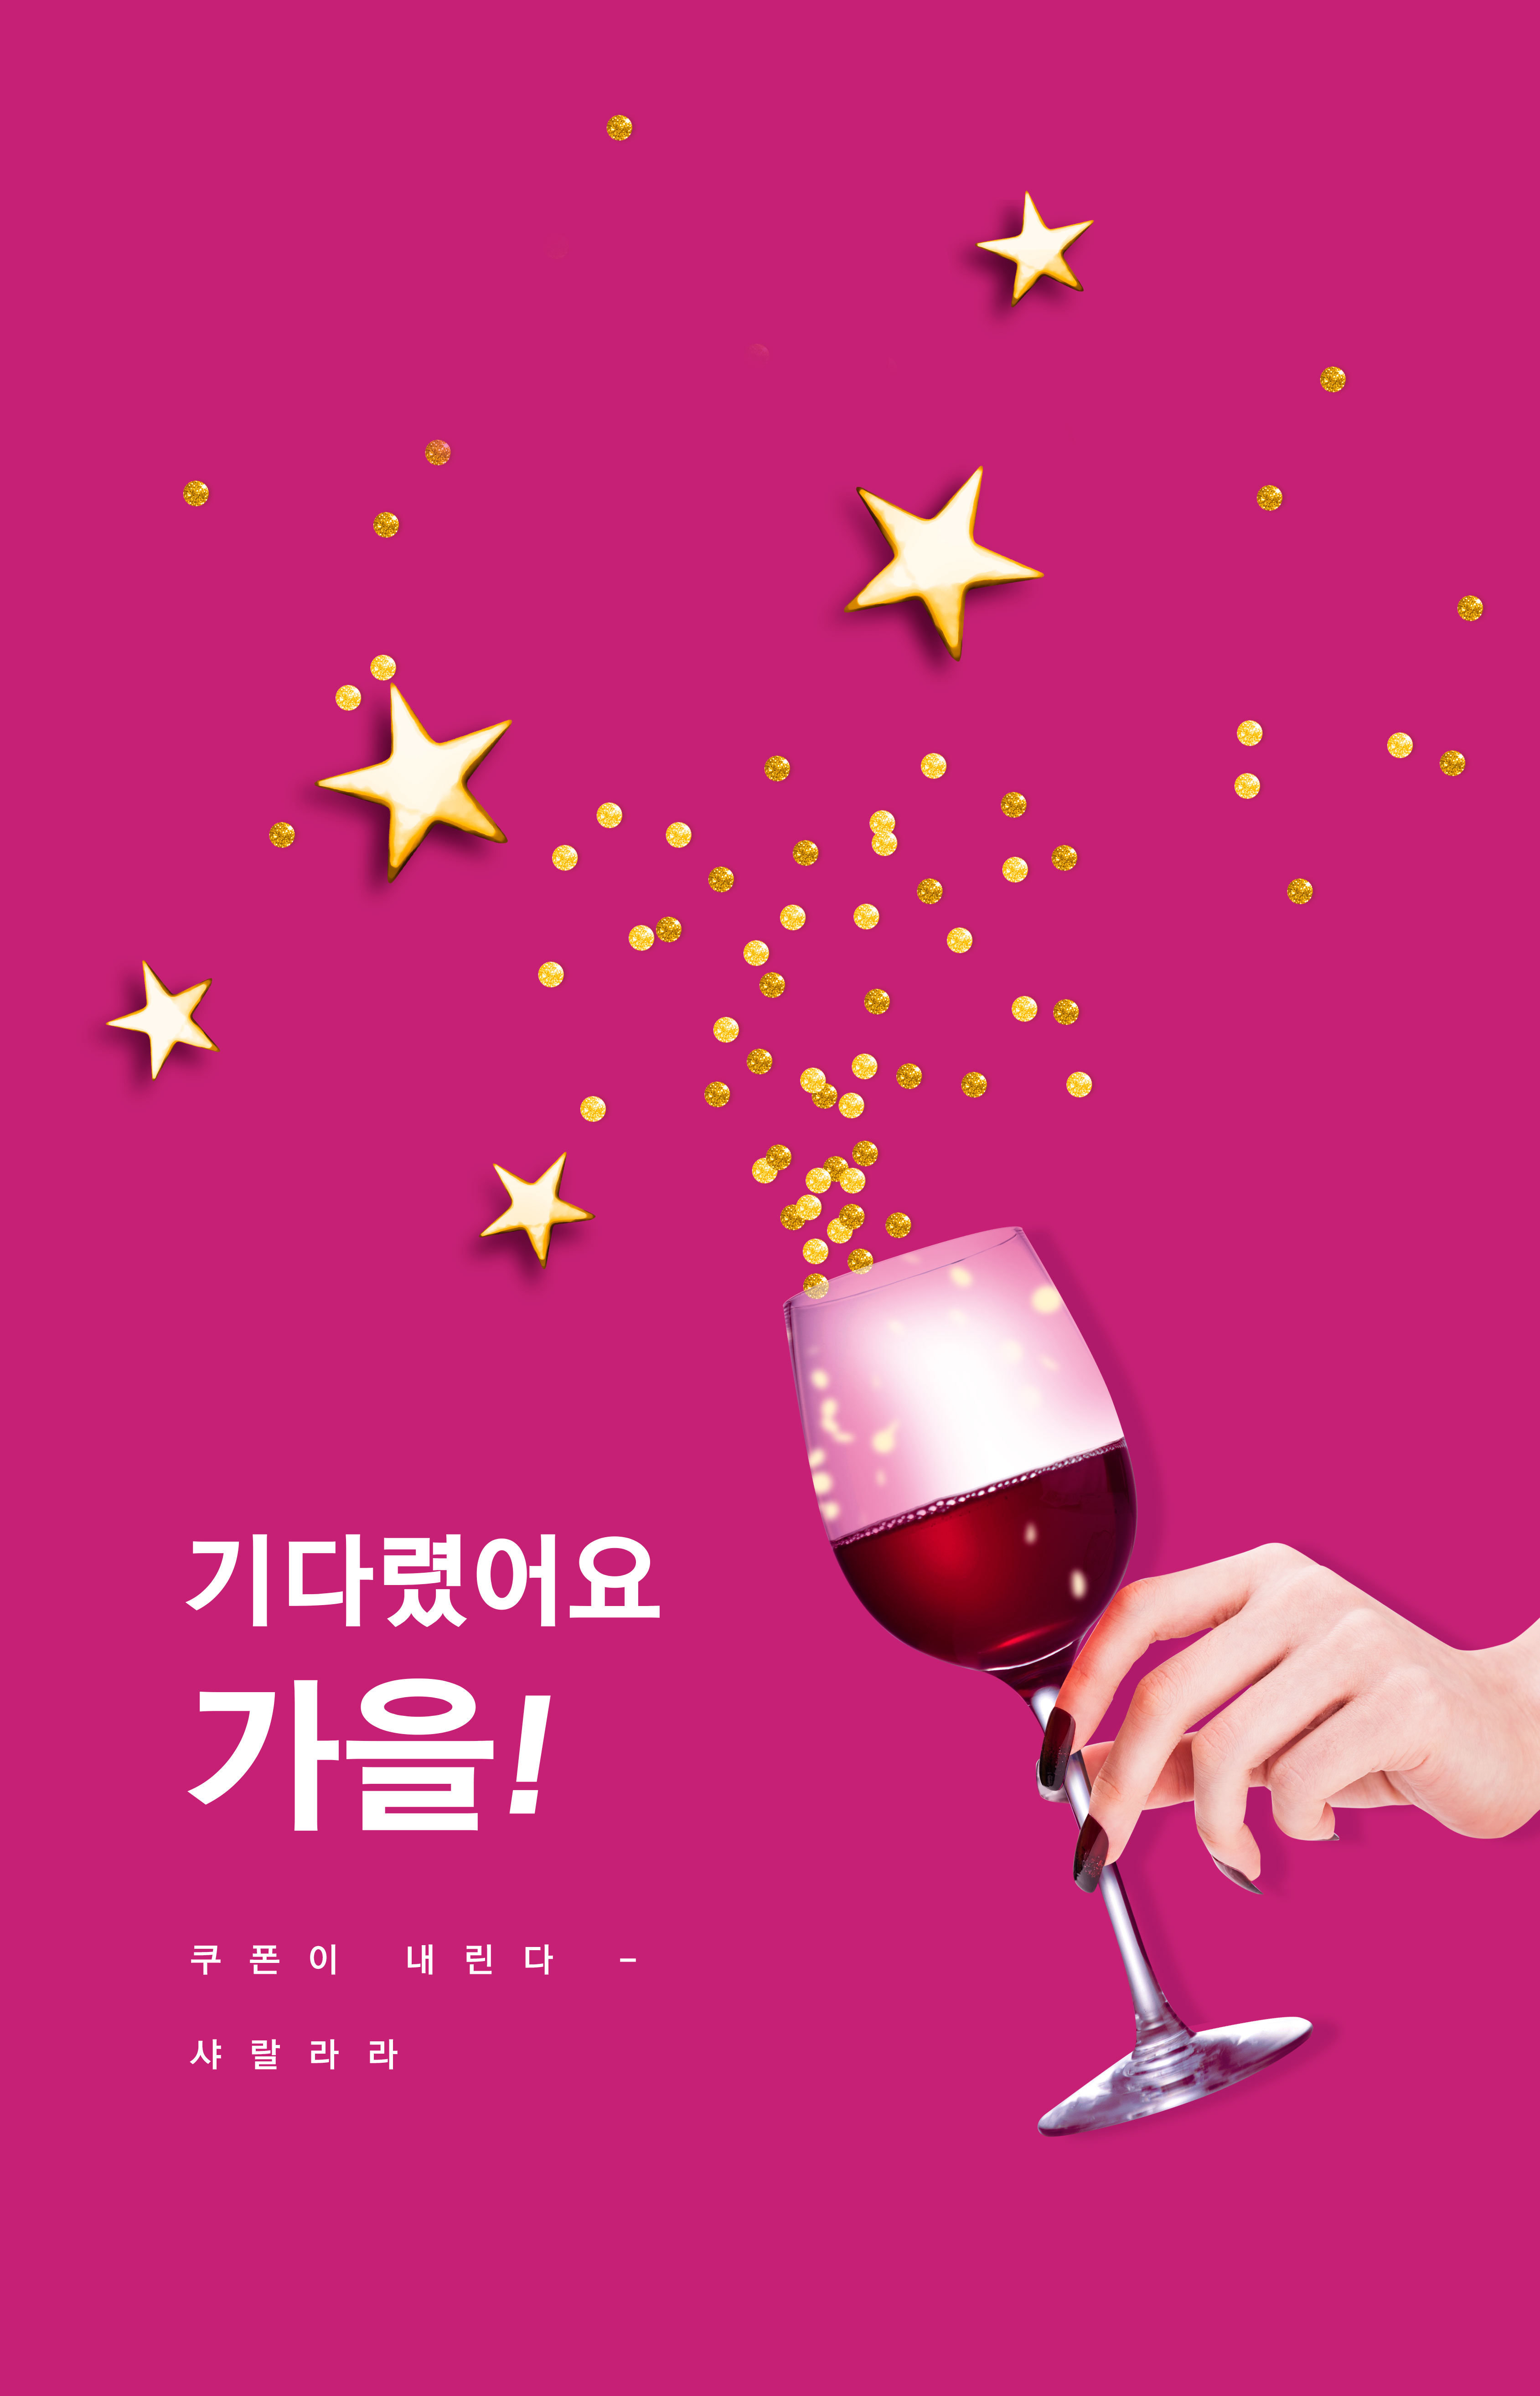 玫红色背景红酒品牌推广海报设计模板插图